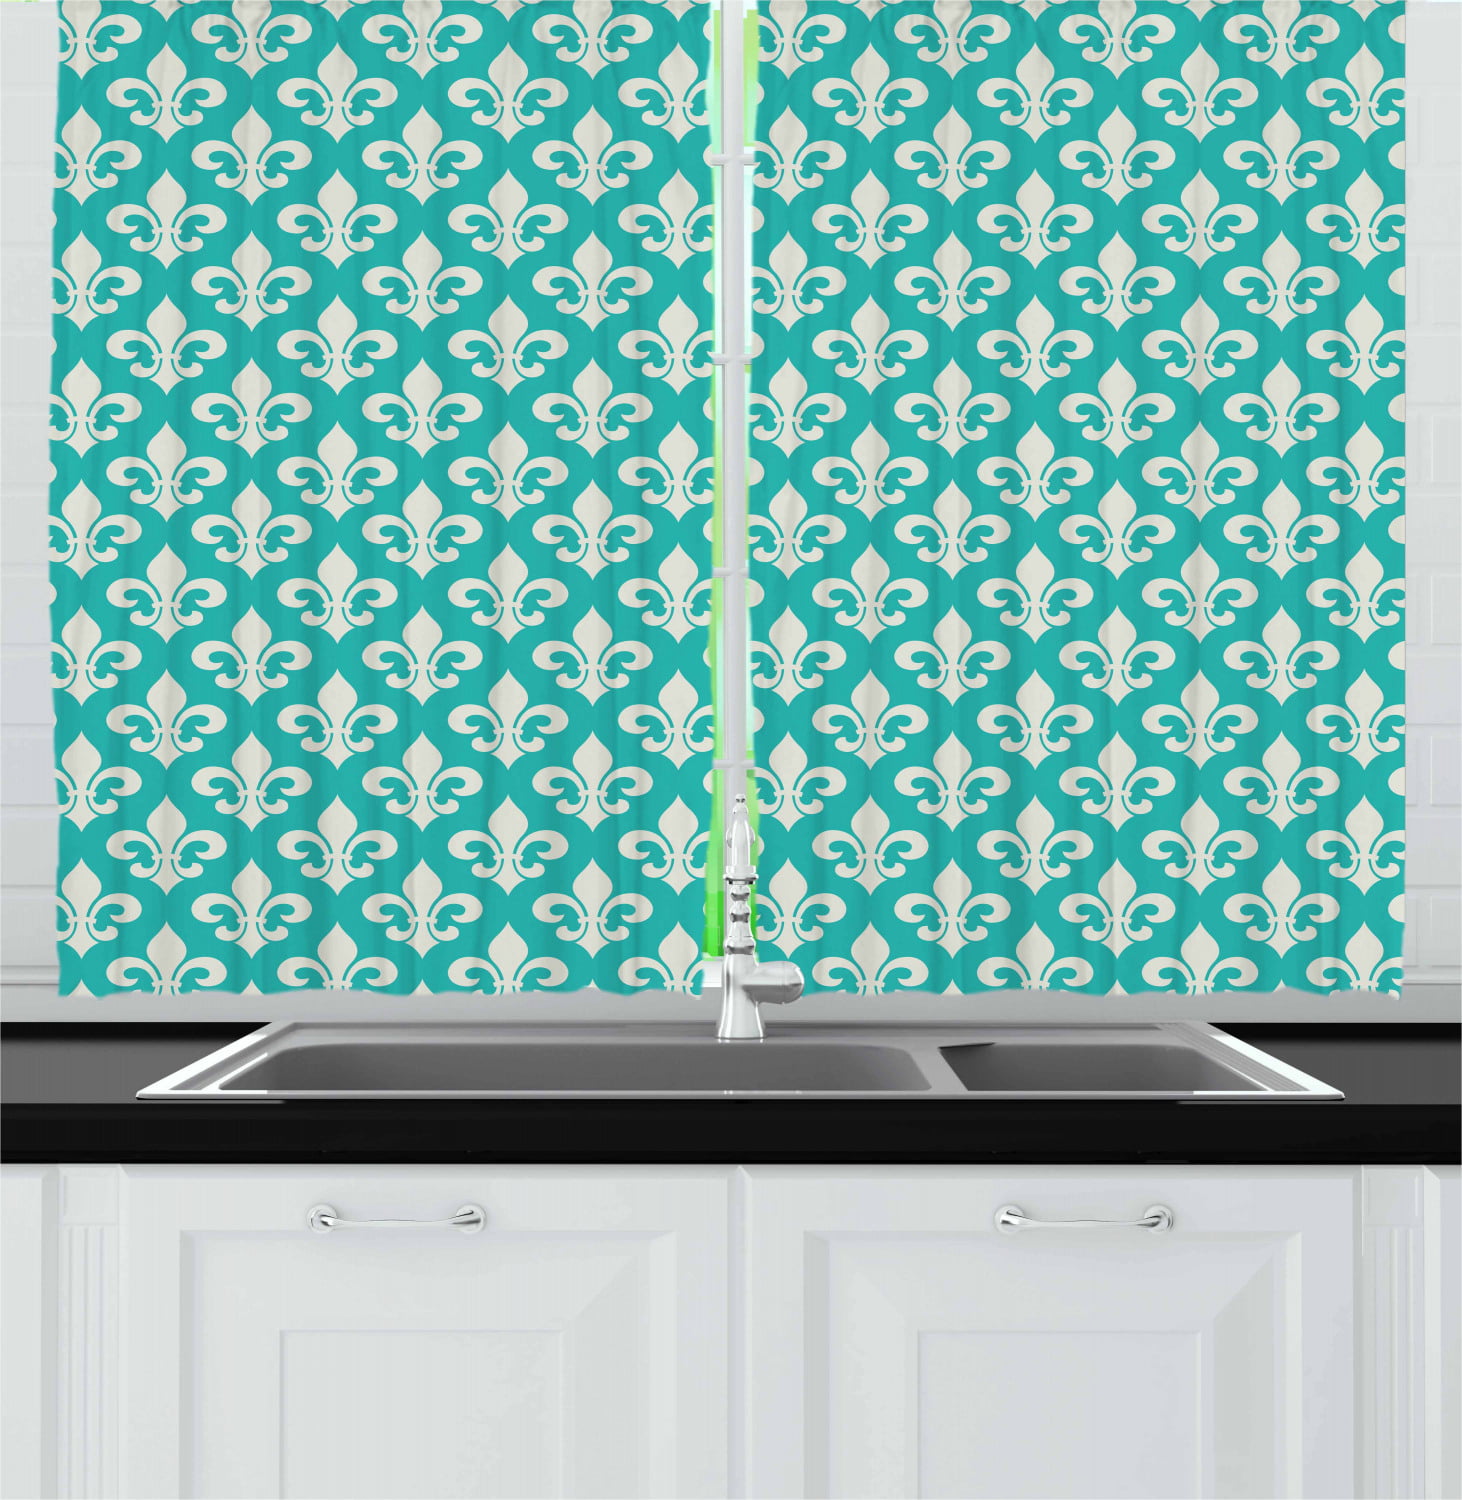 Artsy Effects Window Ds, Fleur De Lis Curtains For Kitchen